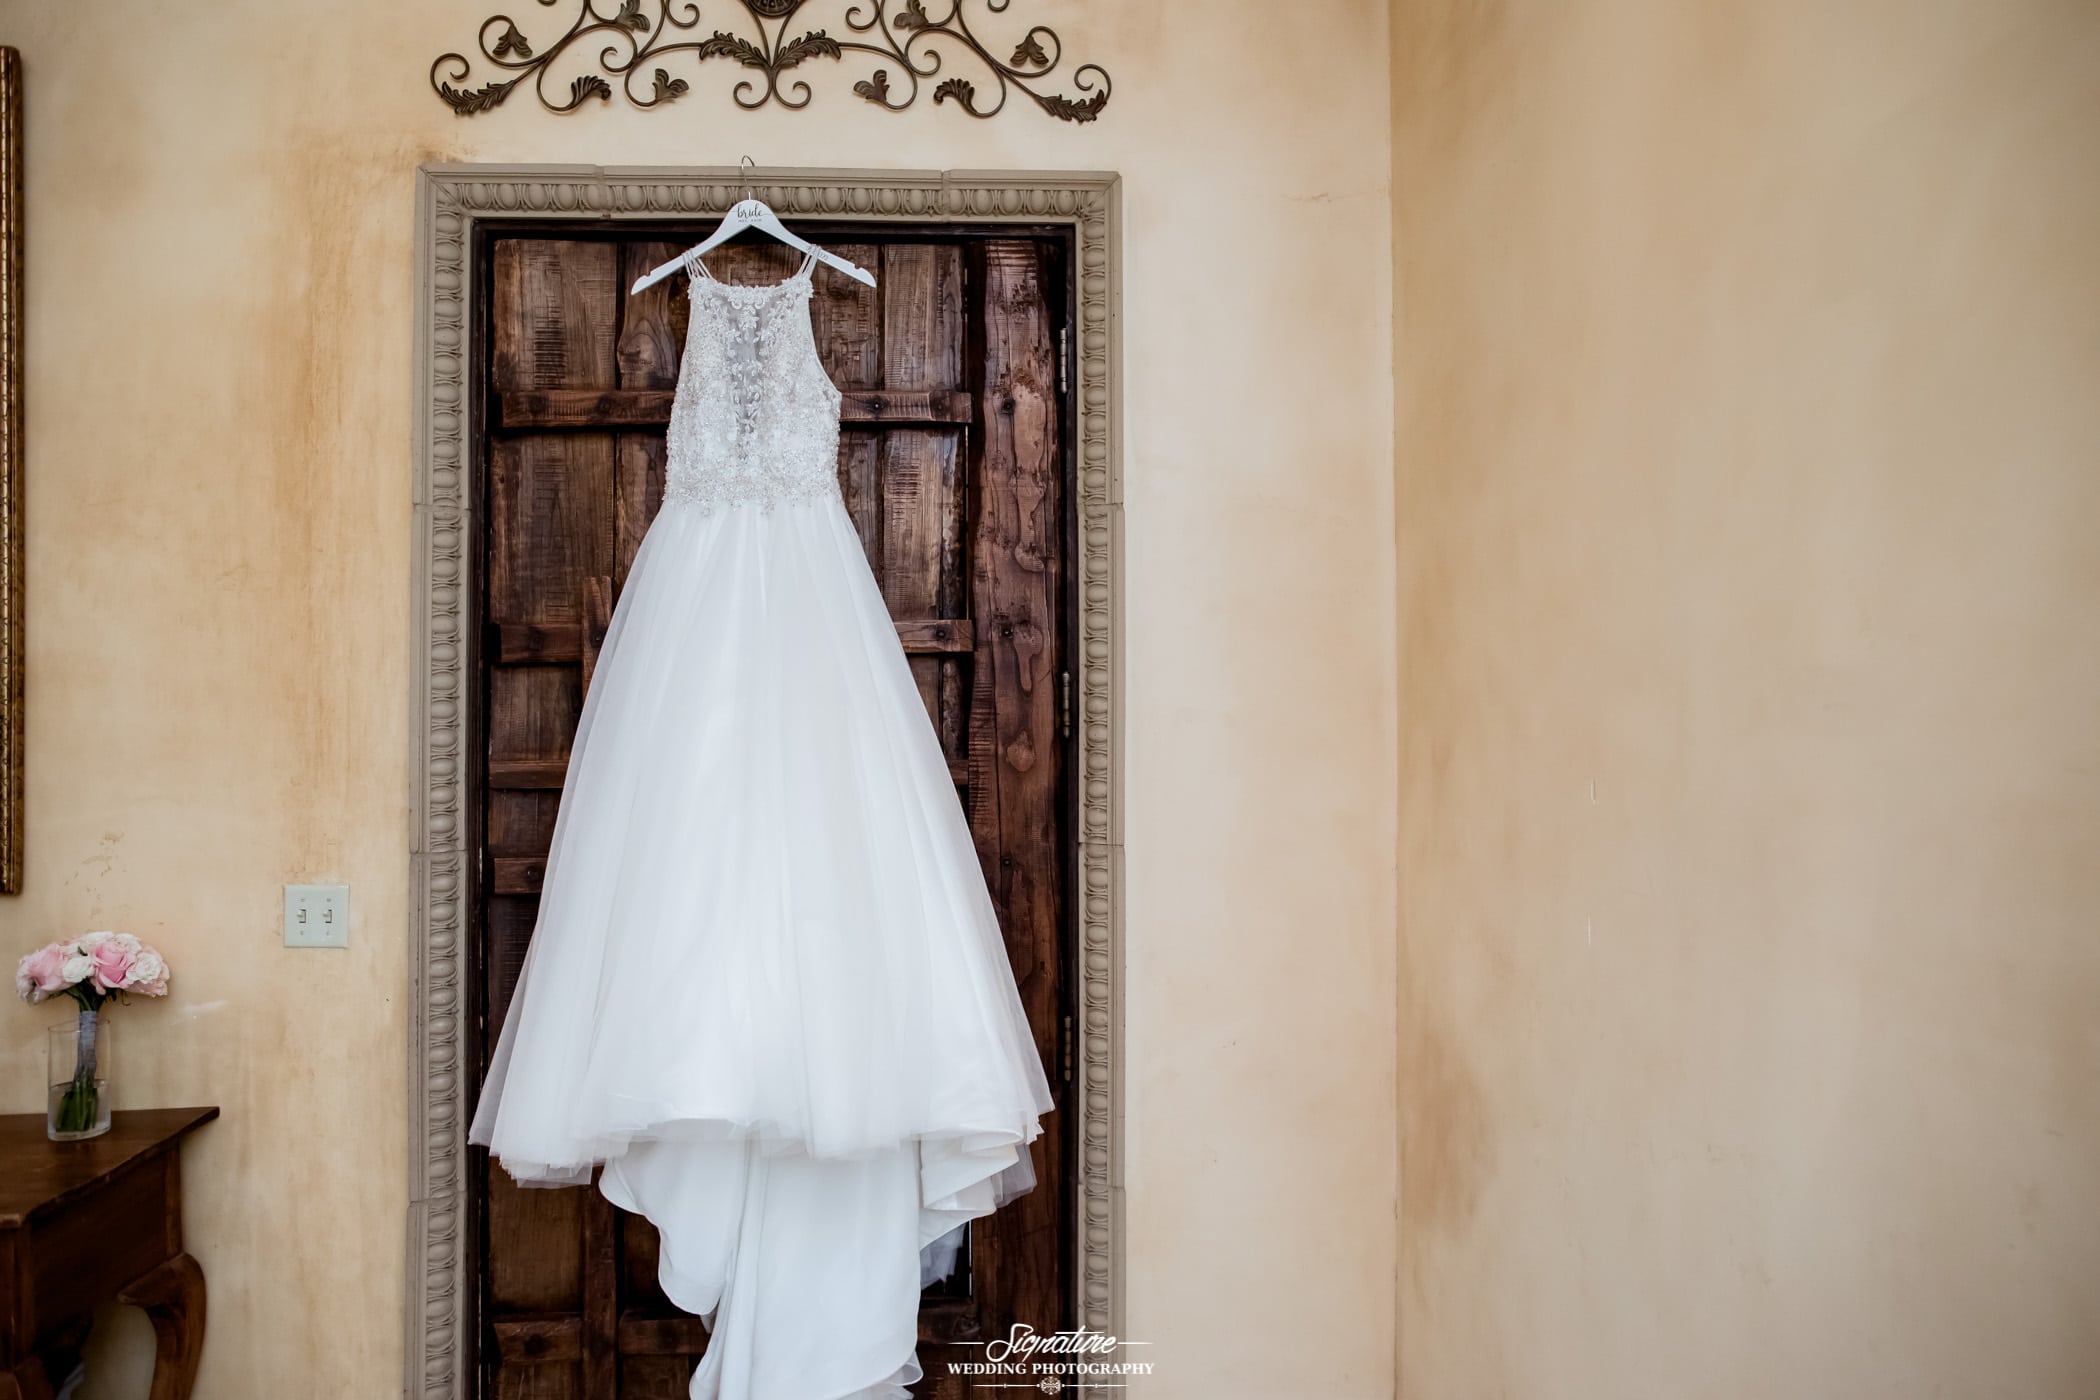 Wedding dress hanging above door